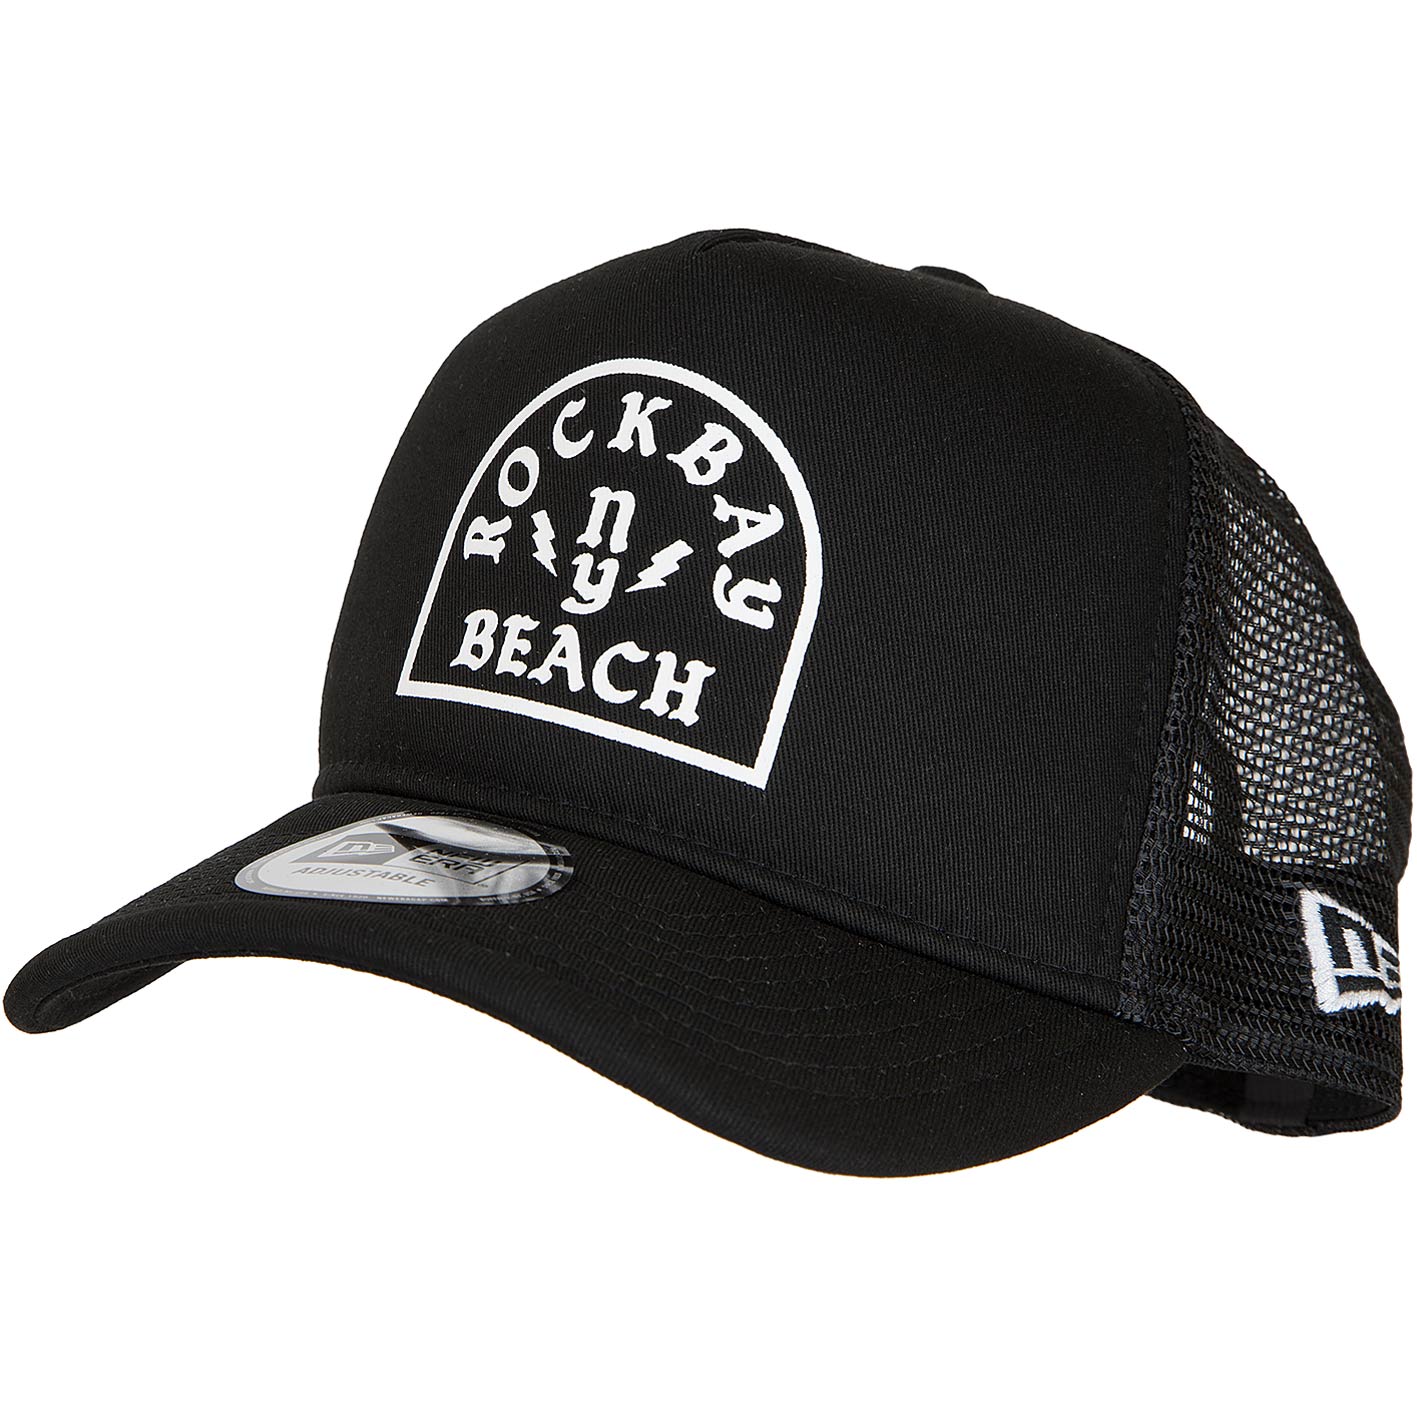 ☆ New Era Trucker Cap Rockbay Beach schwarz/weiß - hier bestellen!